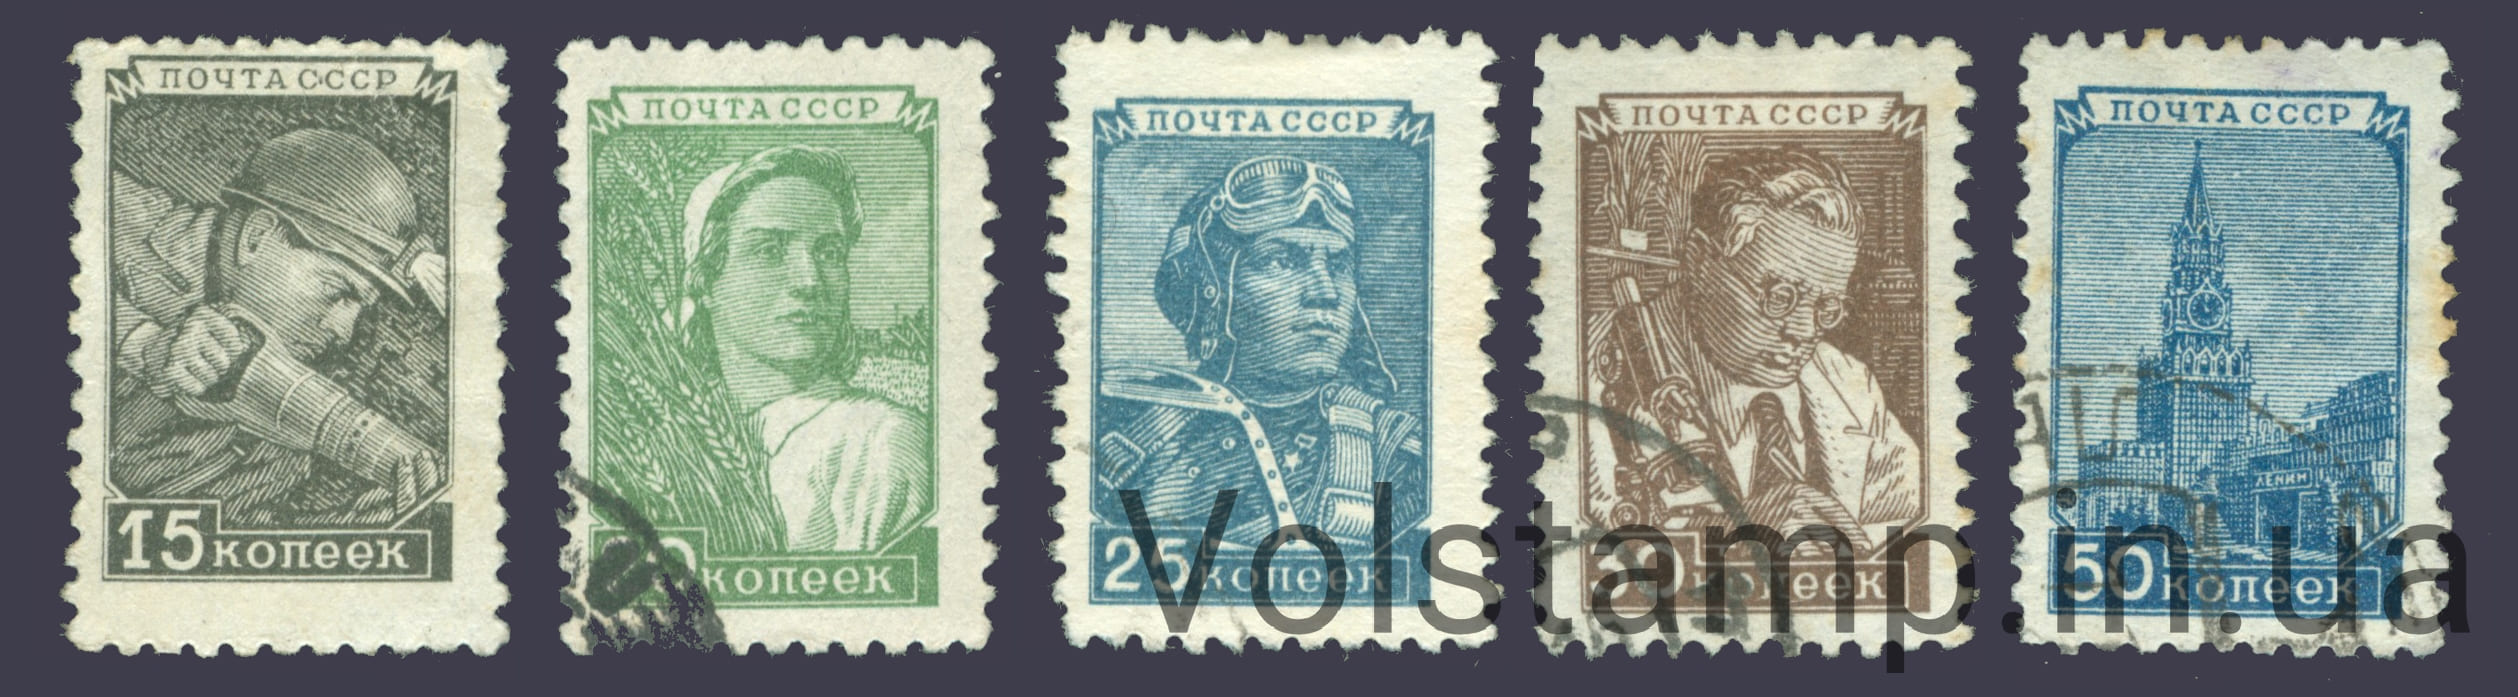 1949 серия марок Стандартный выпуск - Гашеные №1293-1297